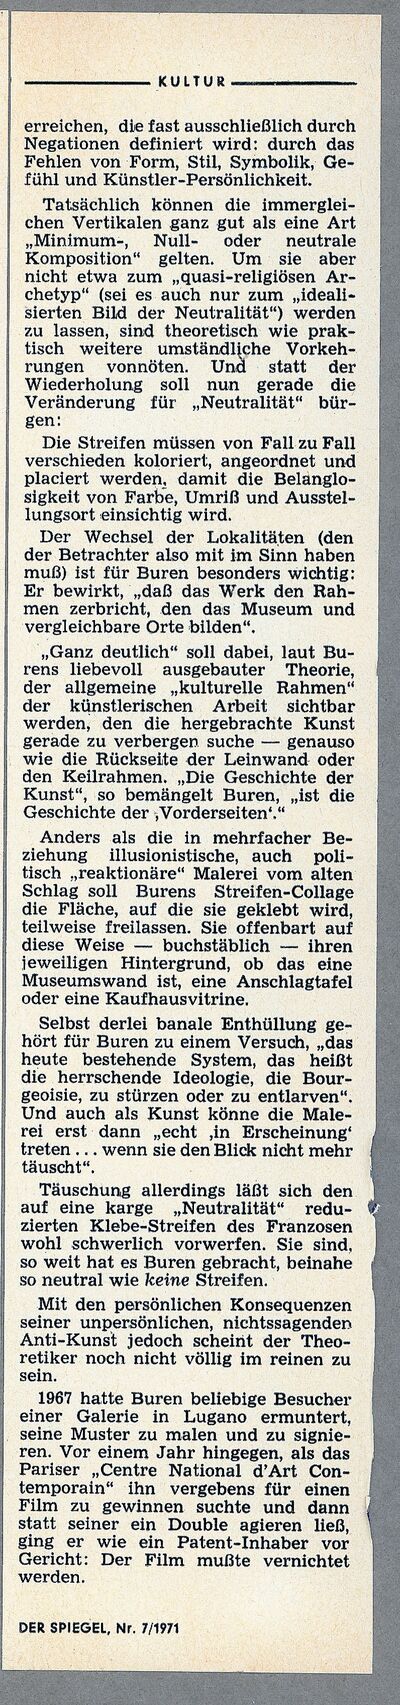 Der Spiegel, Nr. 7, 8.2.1971, Seite 2